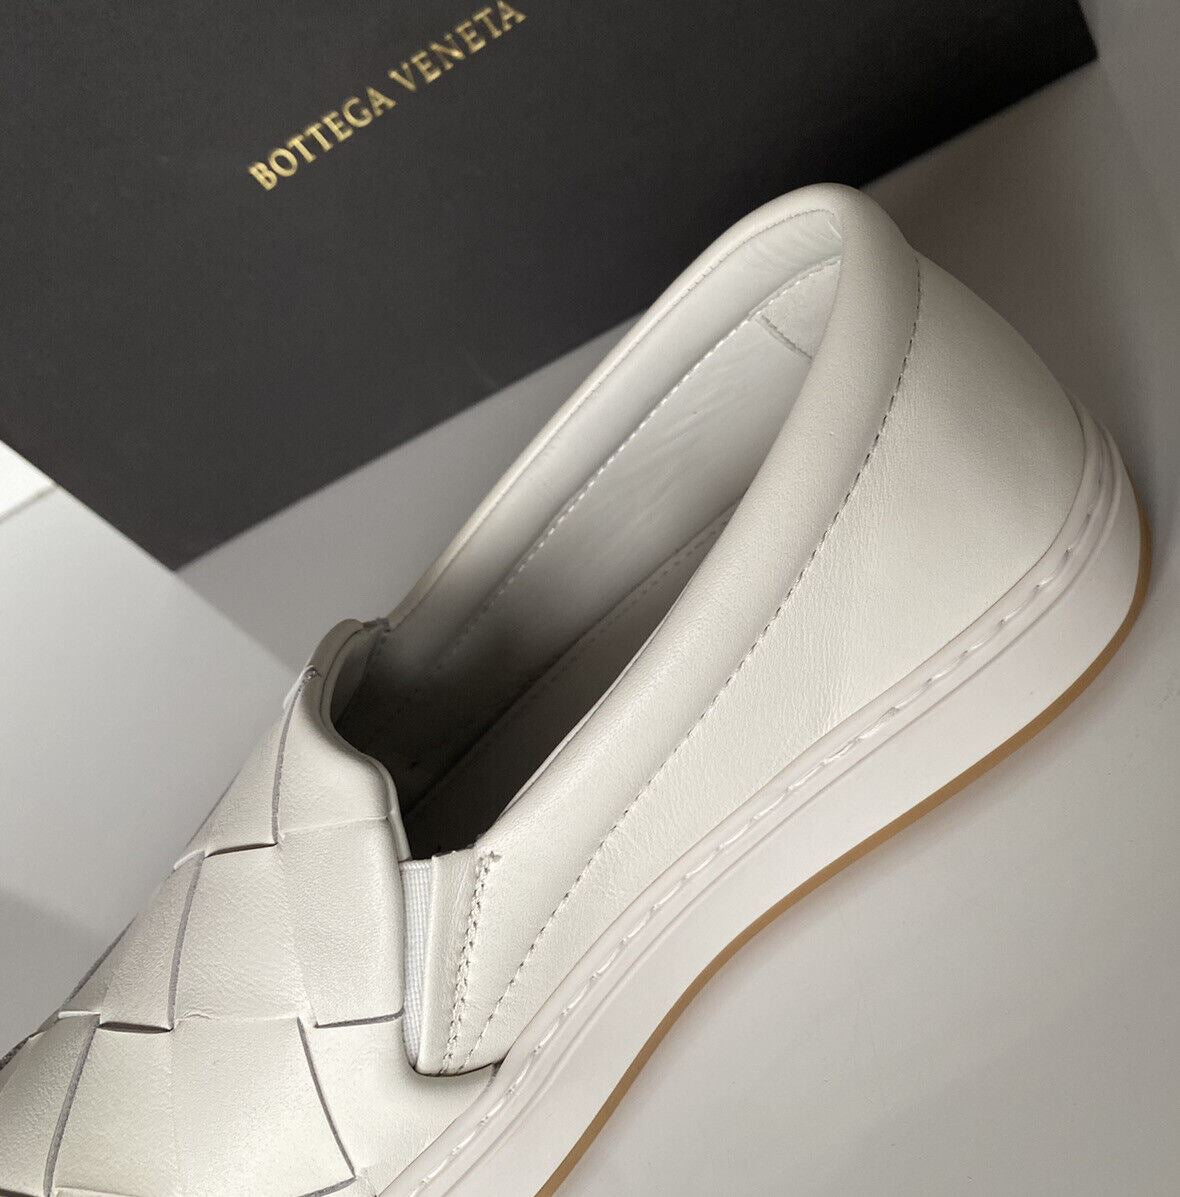 NIB Bottega Veneta Белые туфли из телячьей кожи с резиновой подошвой, 10, США 578303 9122 